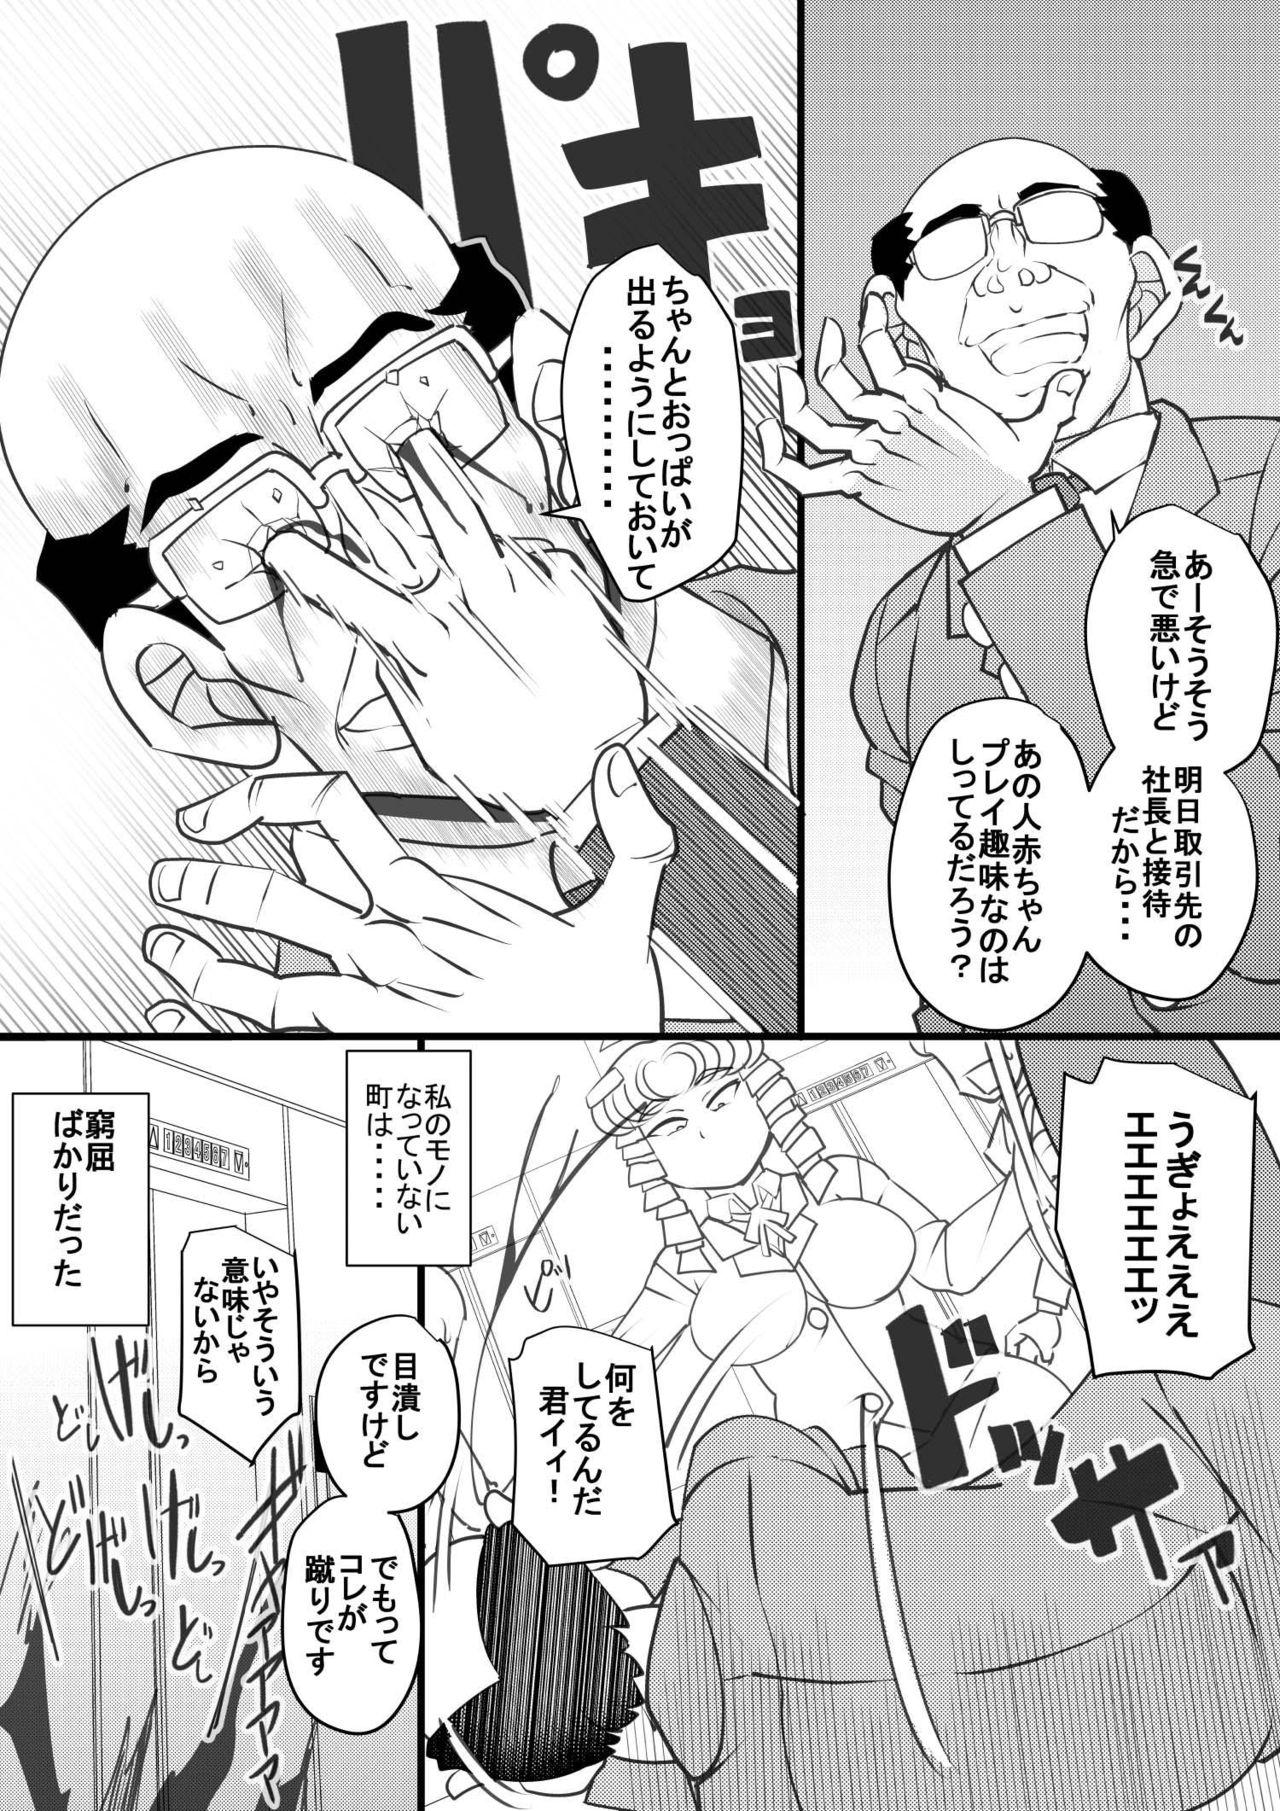 Blowing Uchi no Joseito Zenin Haramaseta Kedamono ga Anta no Gakuen ni Iku Rashii yo? 29 - Original Ngentot - Page 4